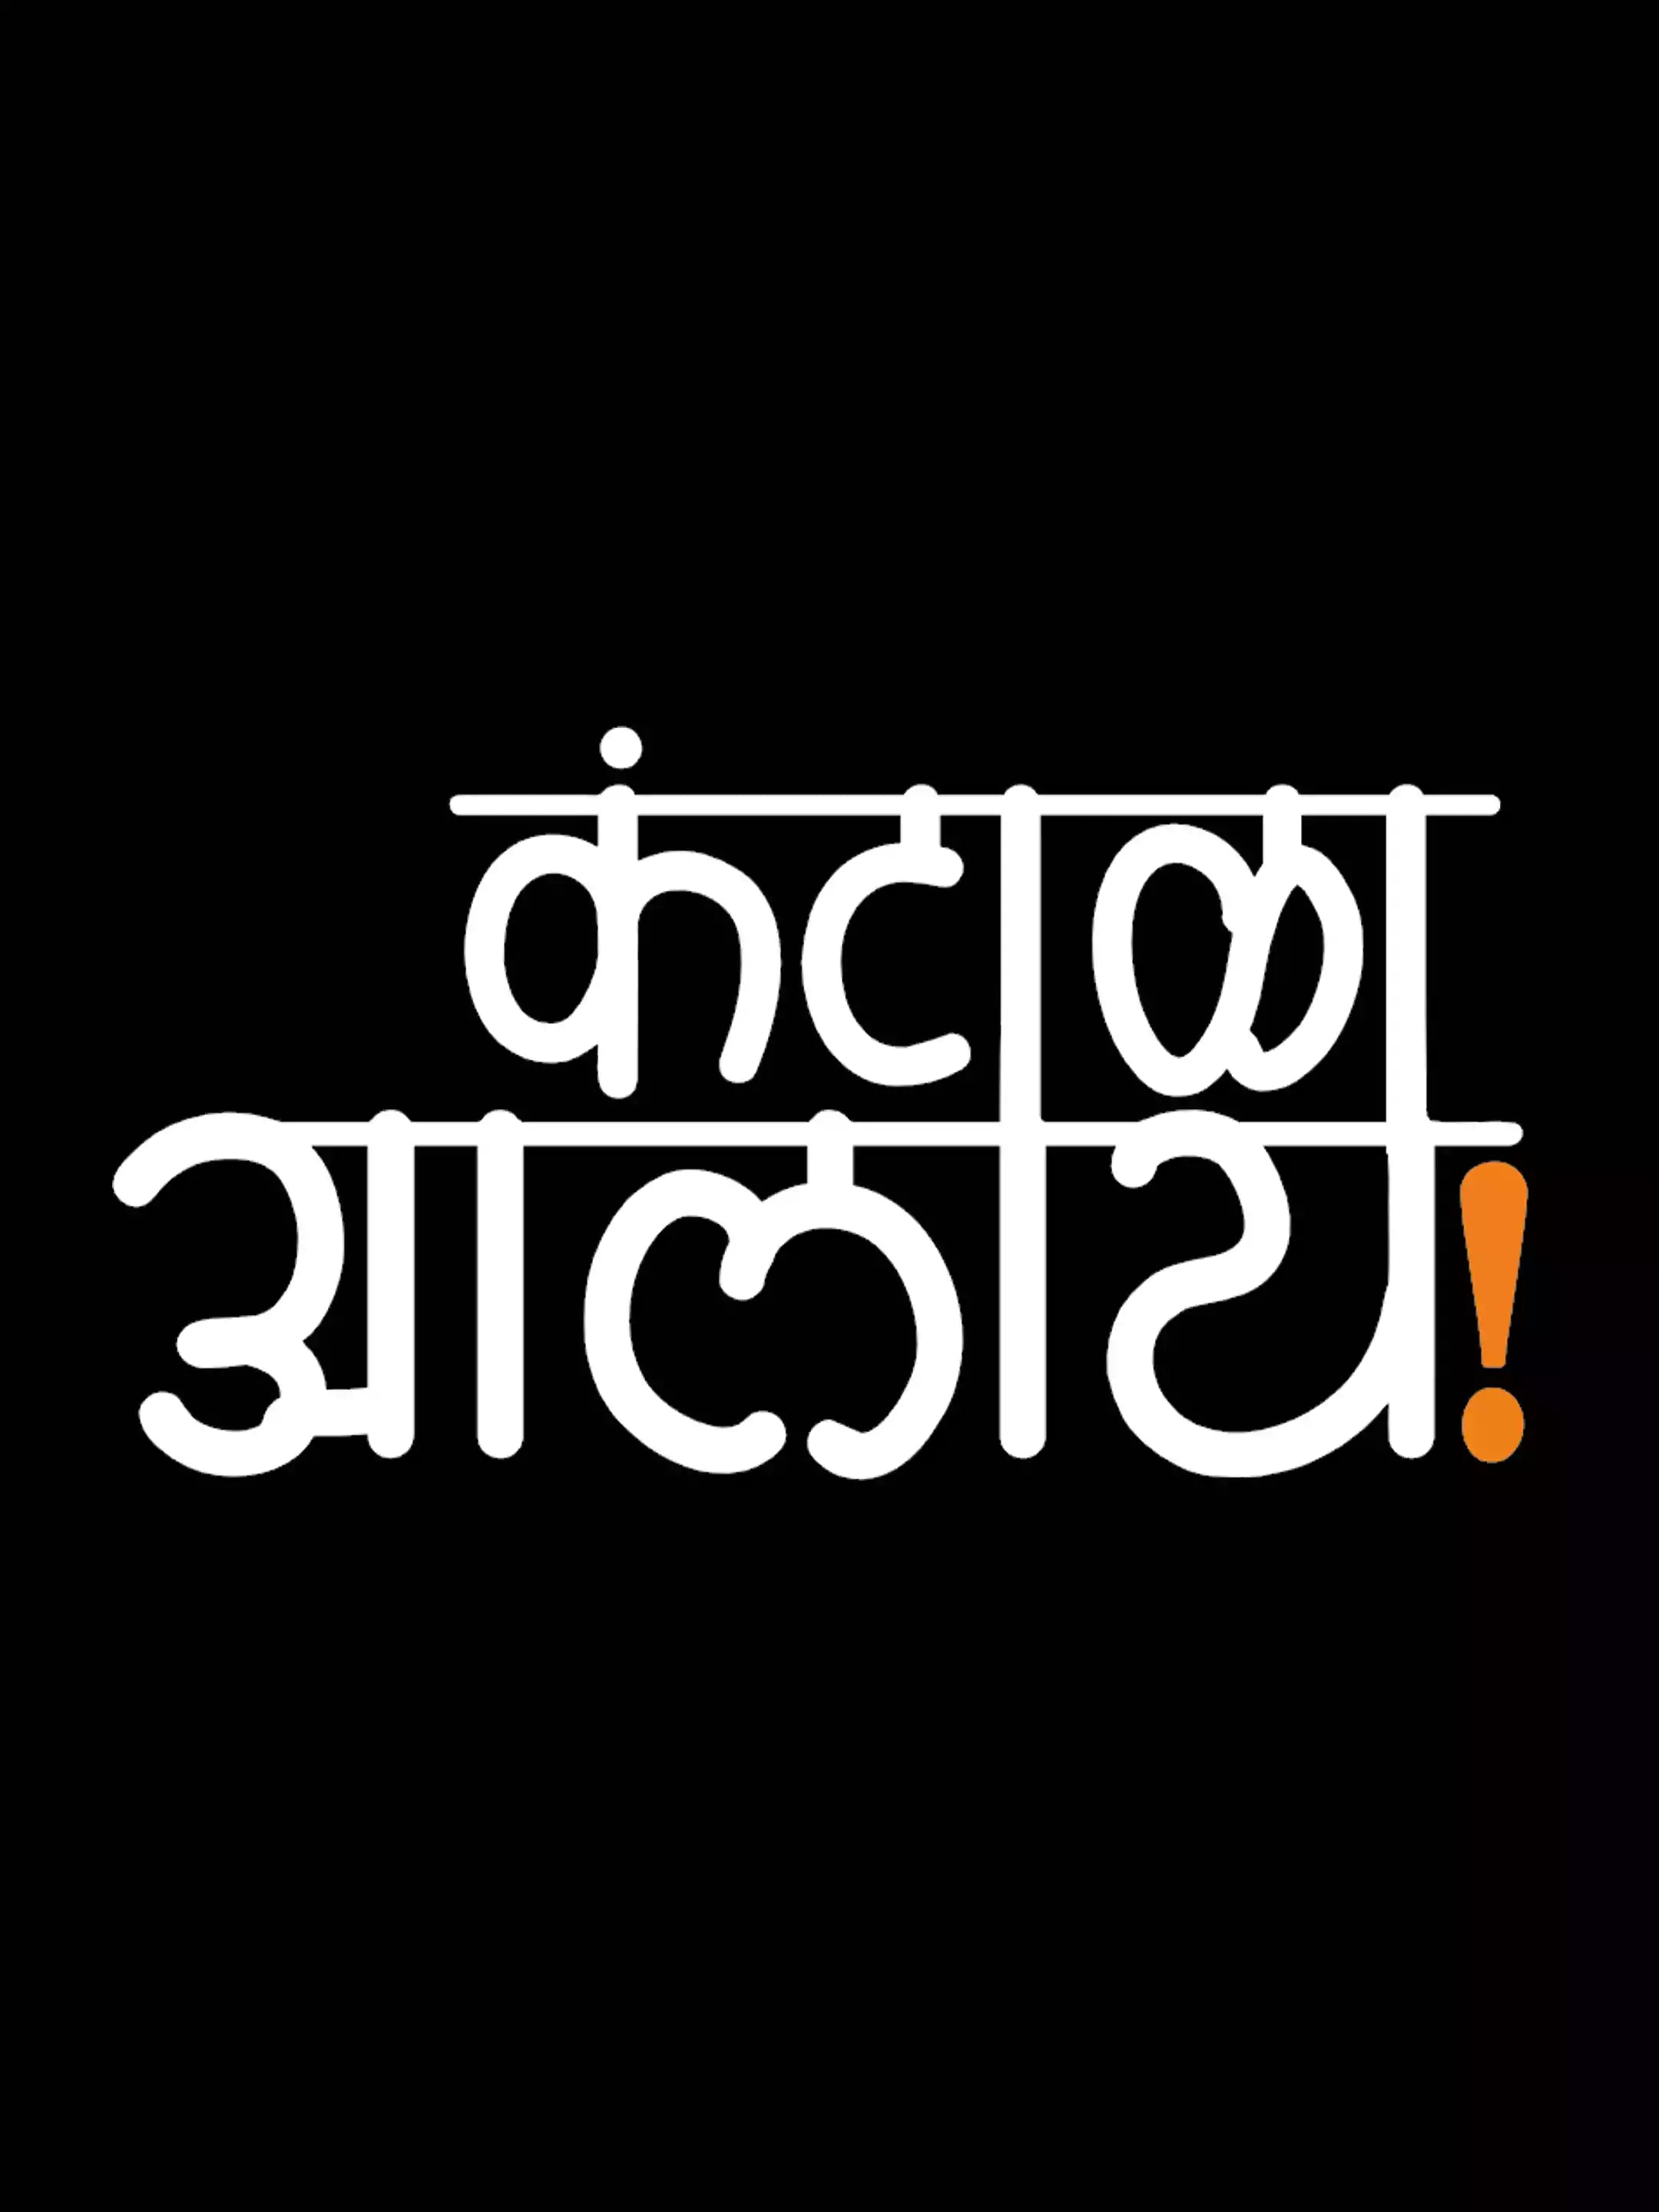 Kantala Alay - Sukhiaatma Unisex Marathi Graphic Printed Black T-shirt